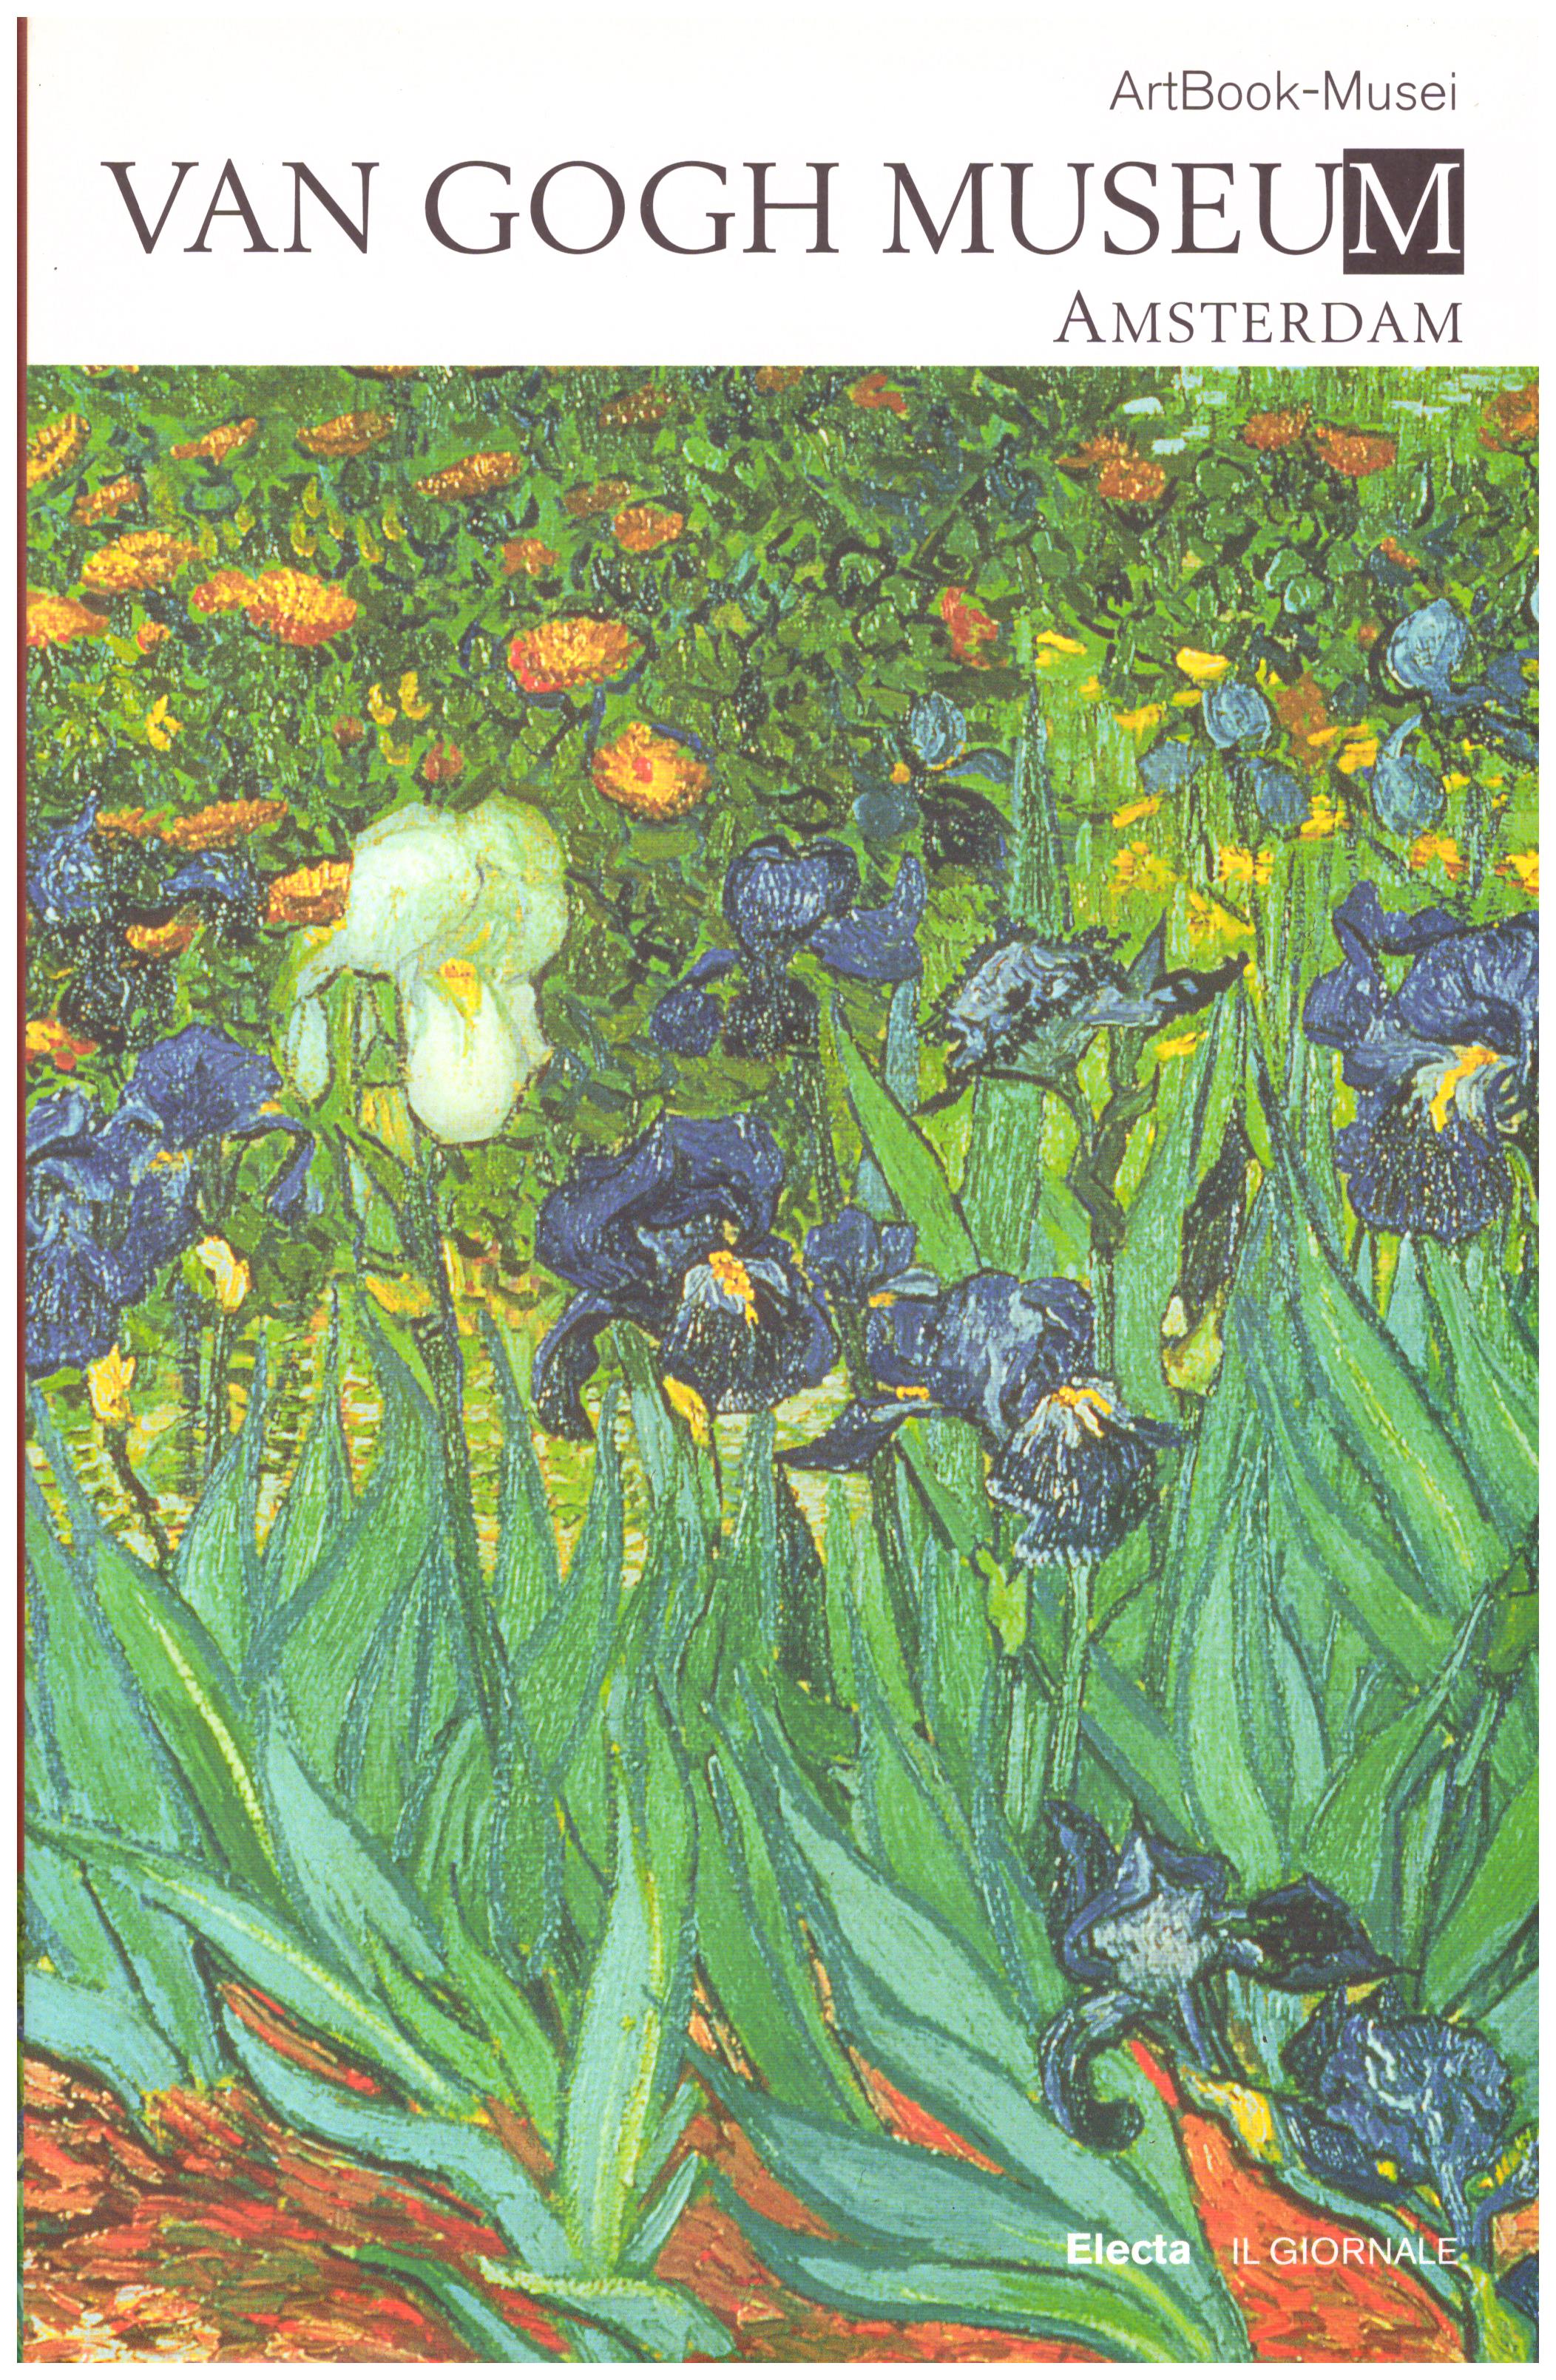 Titolo: ArtBook-Musei Van Gogh Museum Amsterdam  Autore :Paola Rapelli Editore: Electa Il Giornale